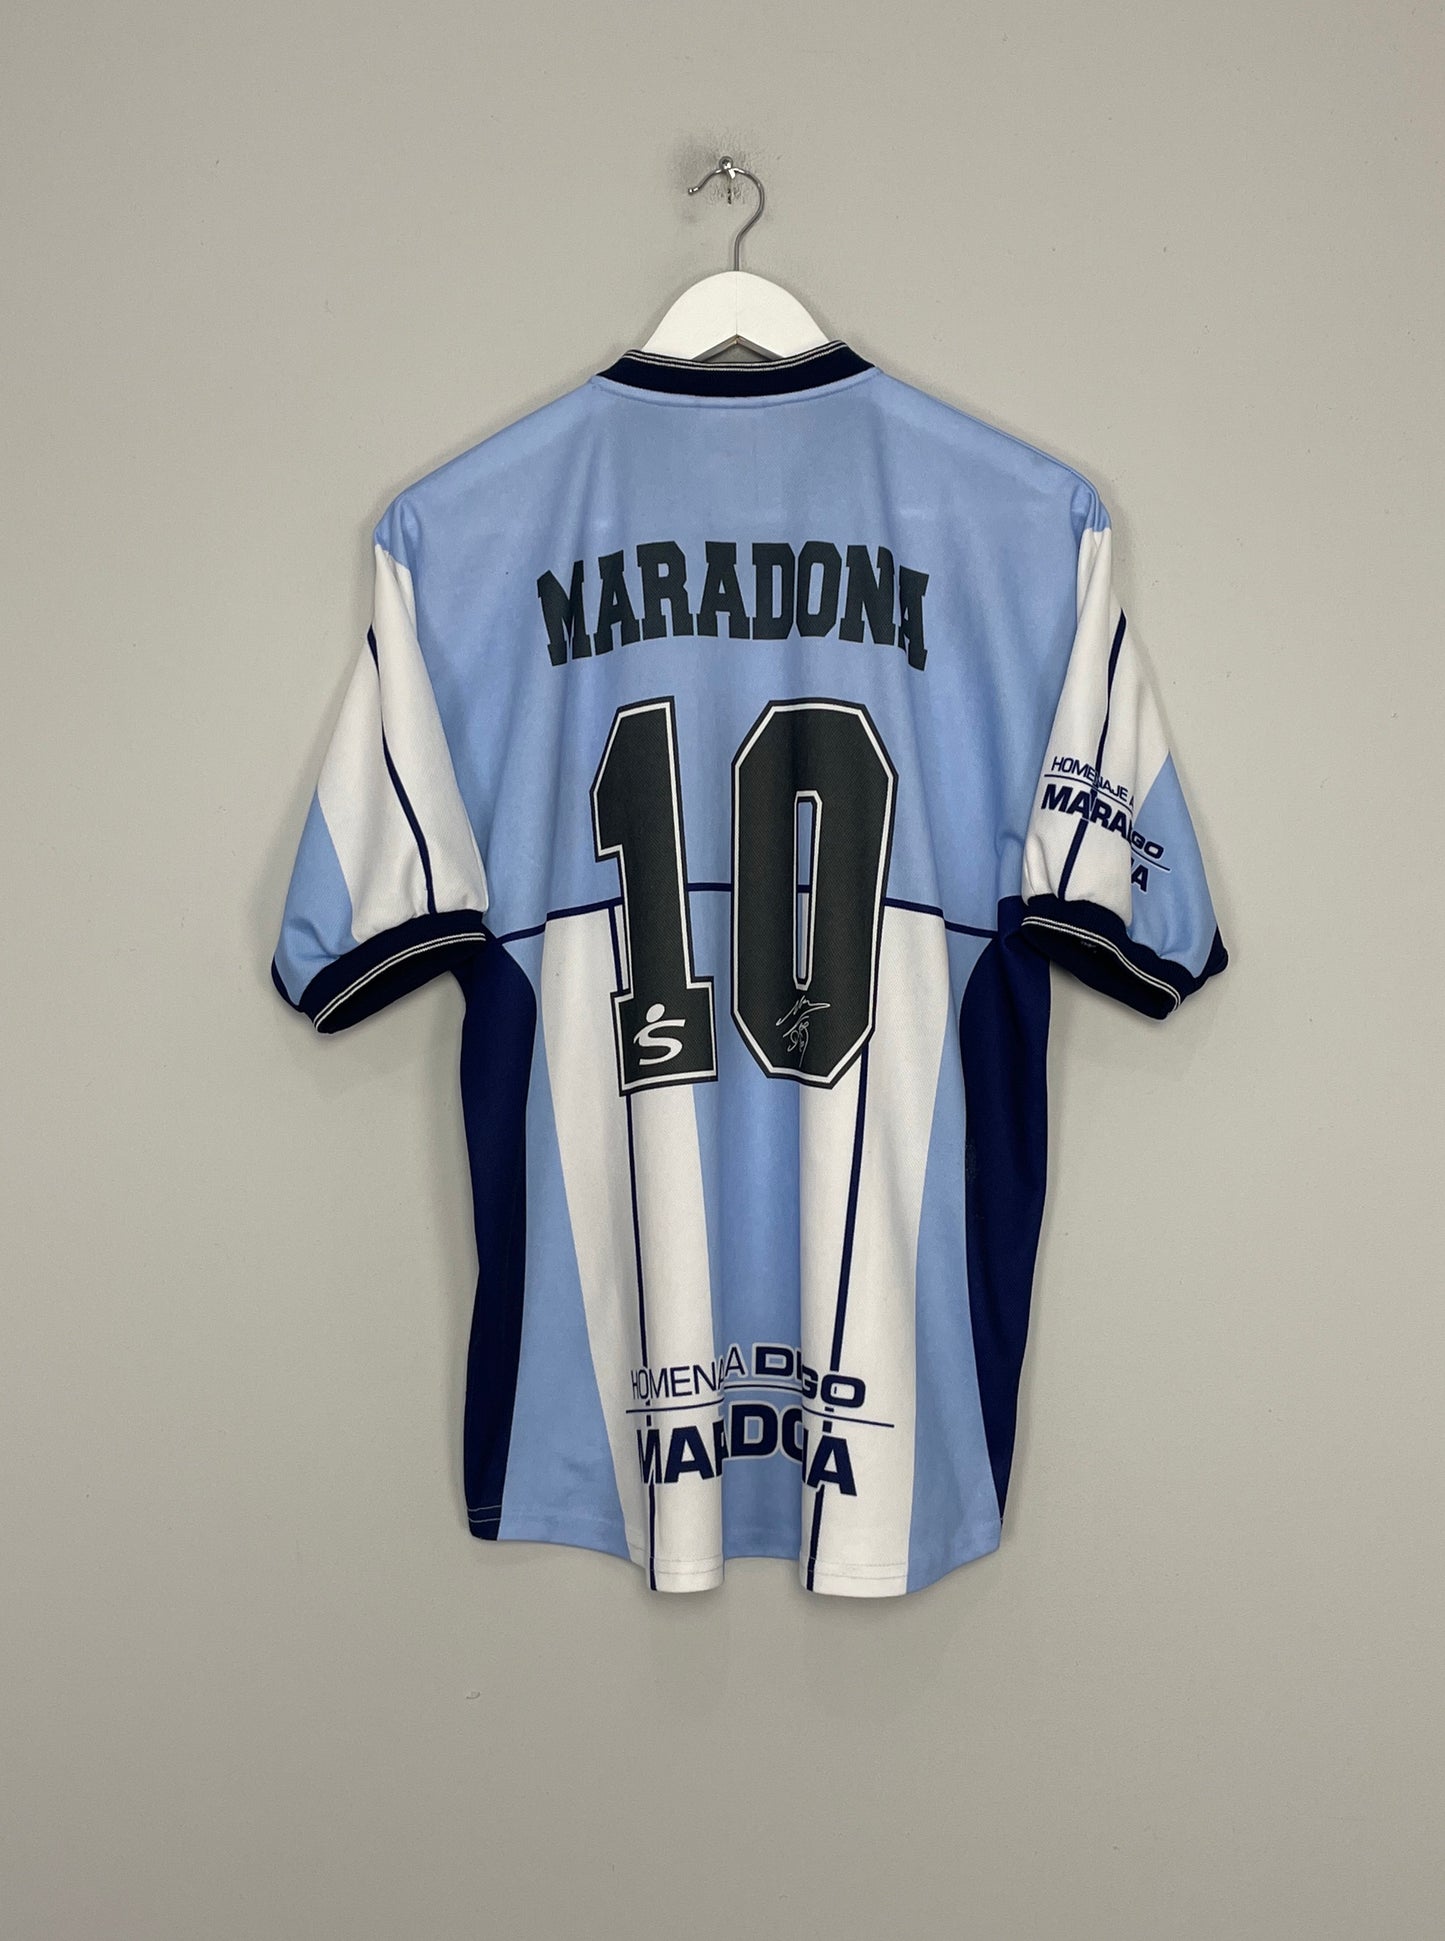 Image of the Argentina Maradona shirt from the 2001 season